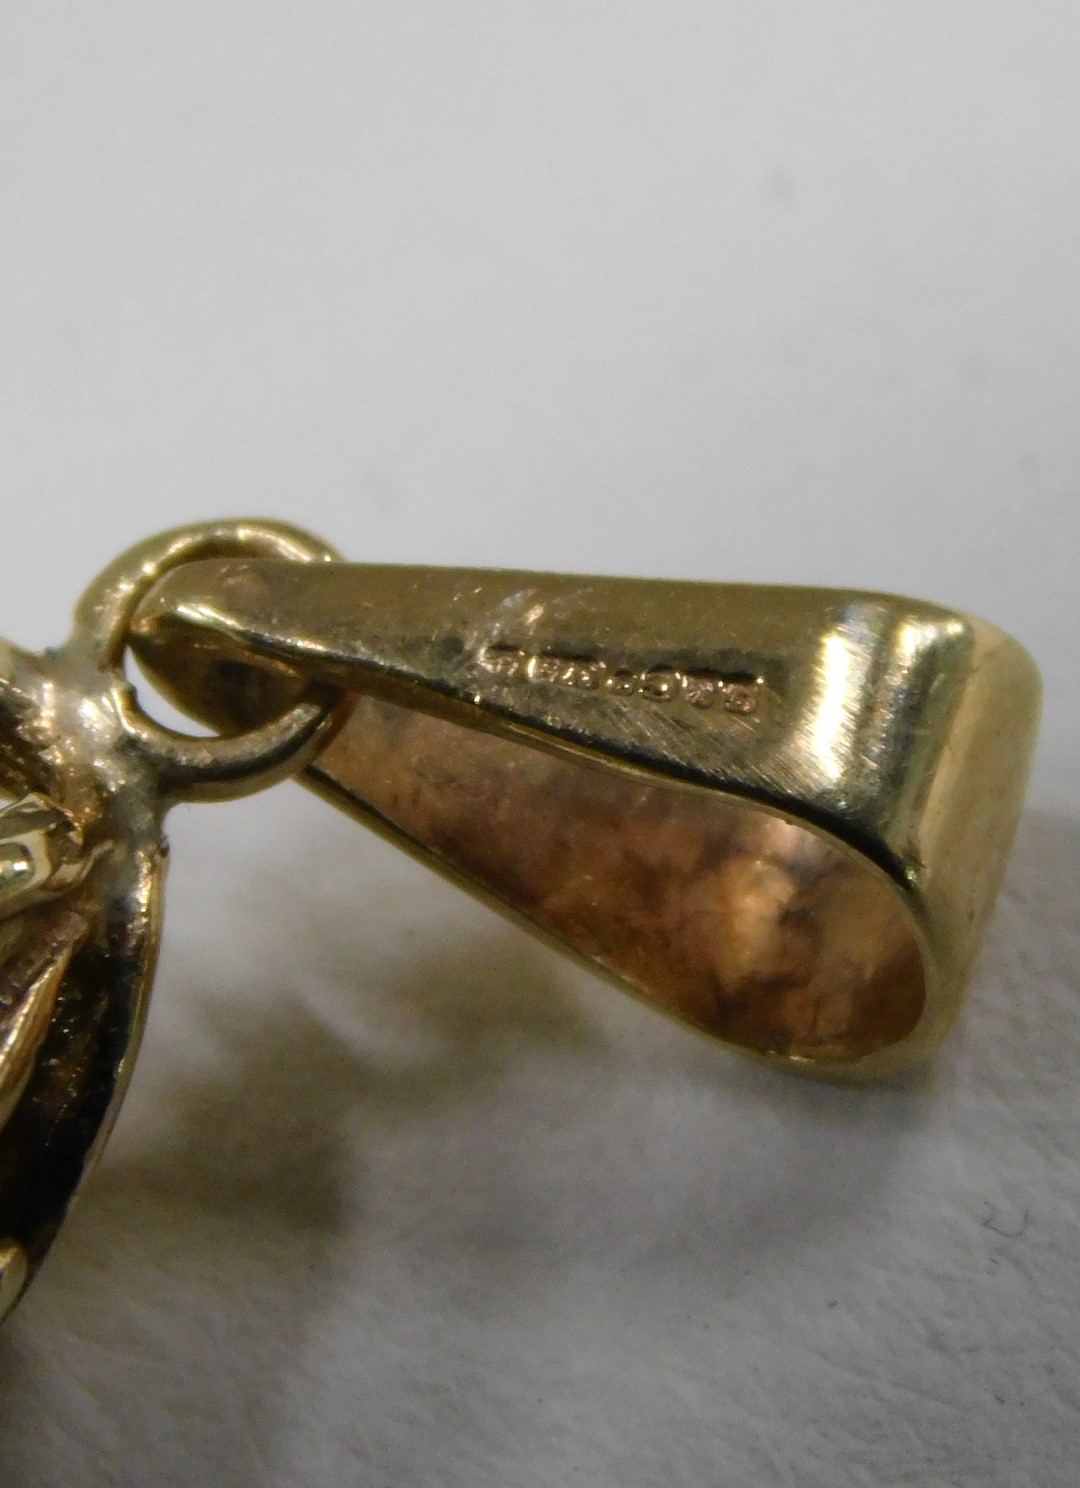 A smokey quartz pendant, the tear drop cut smokey quartz, 4cm high x 2.5cm wide, with a 9ct gold flo - Image 3 of 3